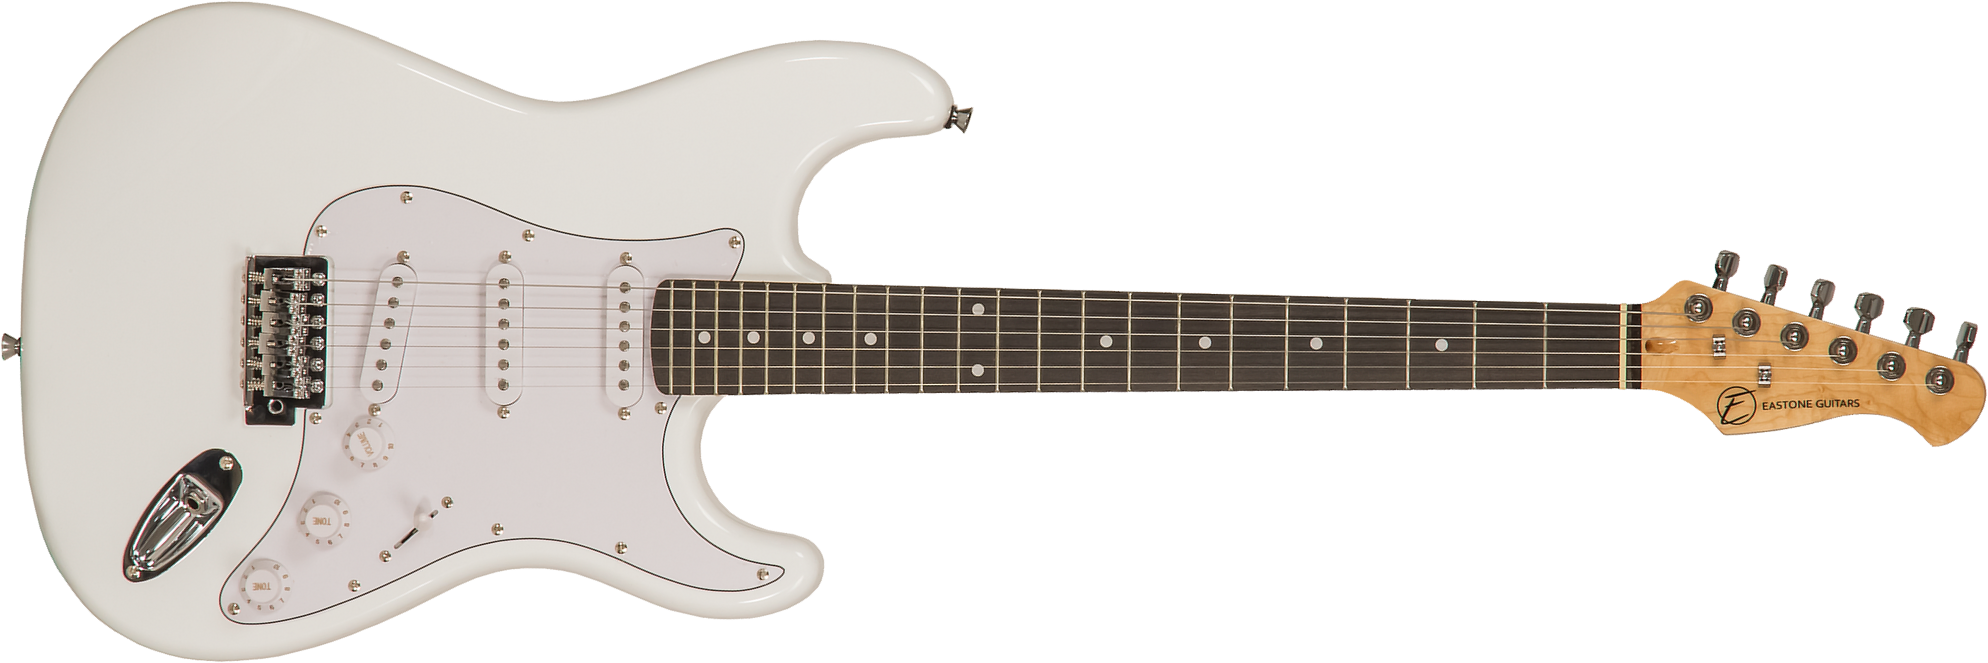 Eastone Str70 3s Trem Pur - Olympic White - Guitarra eléctrica con forma de str. - Main picture